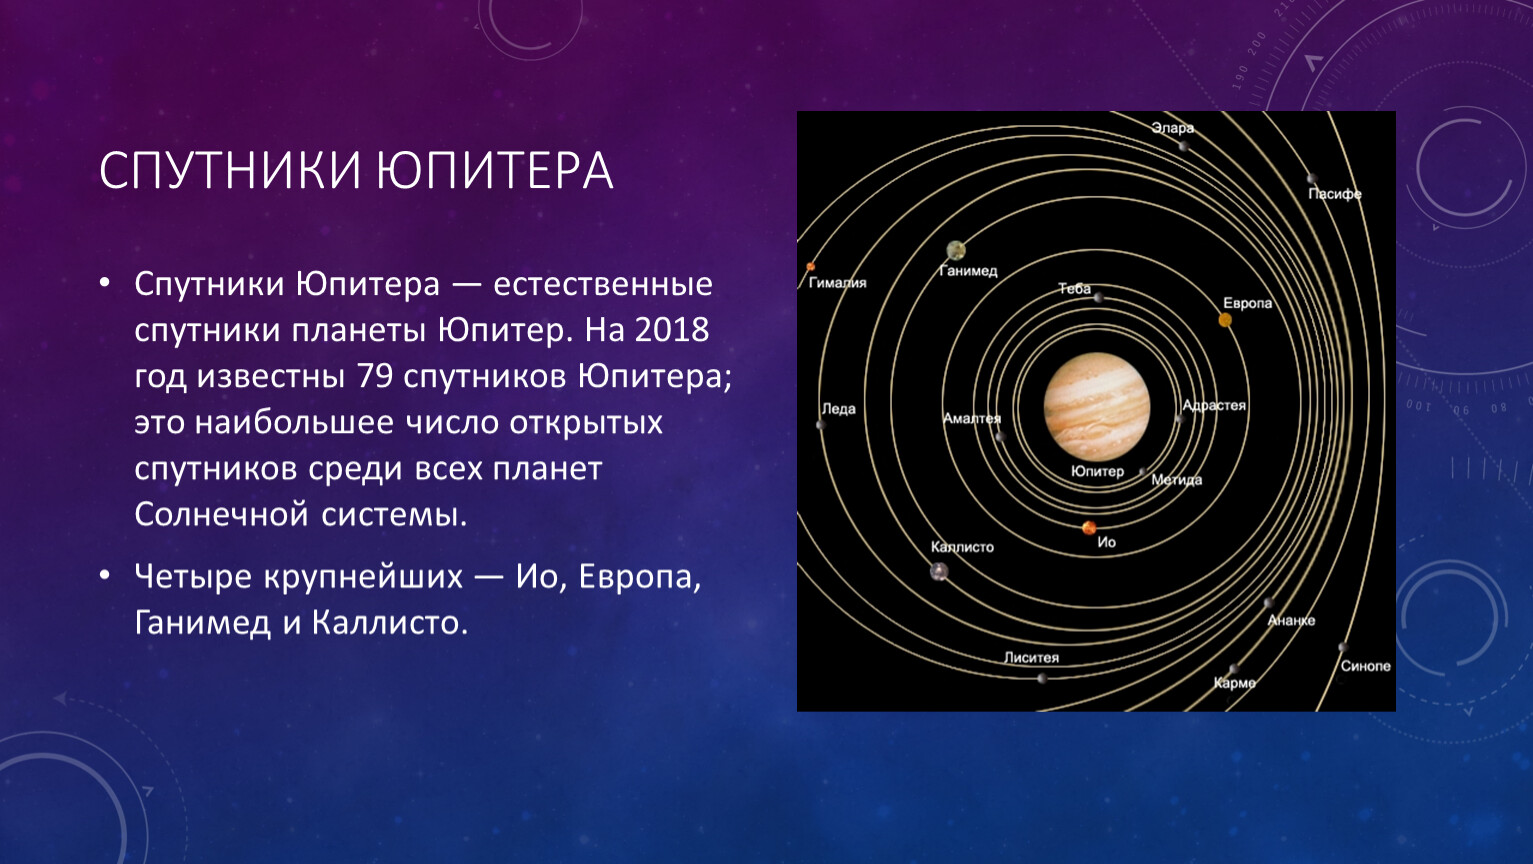 Естественные спутники Юпитера